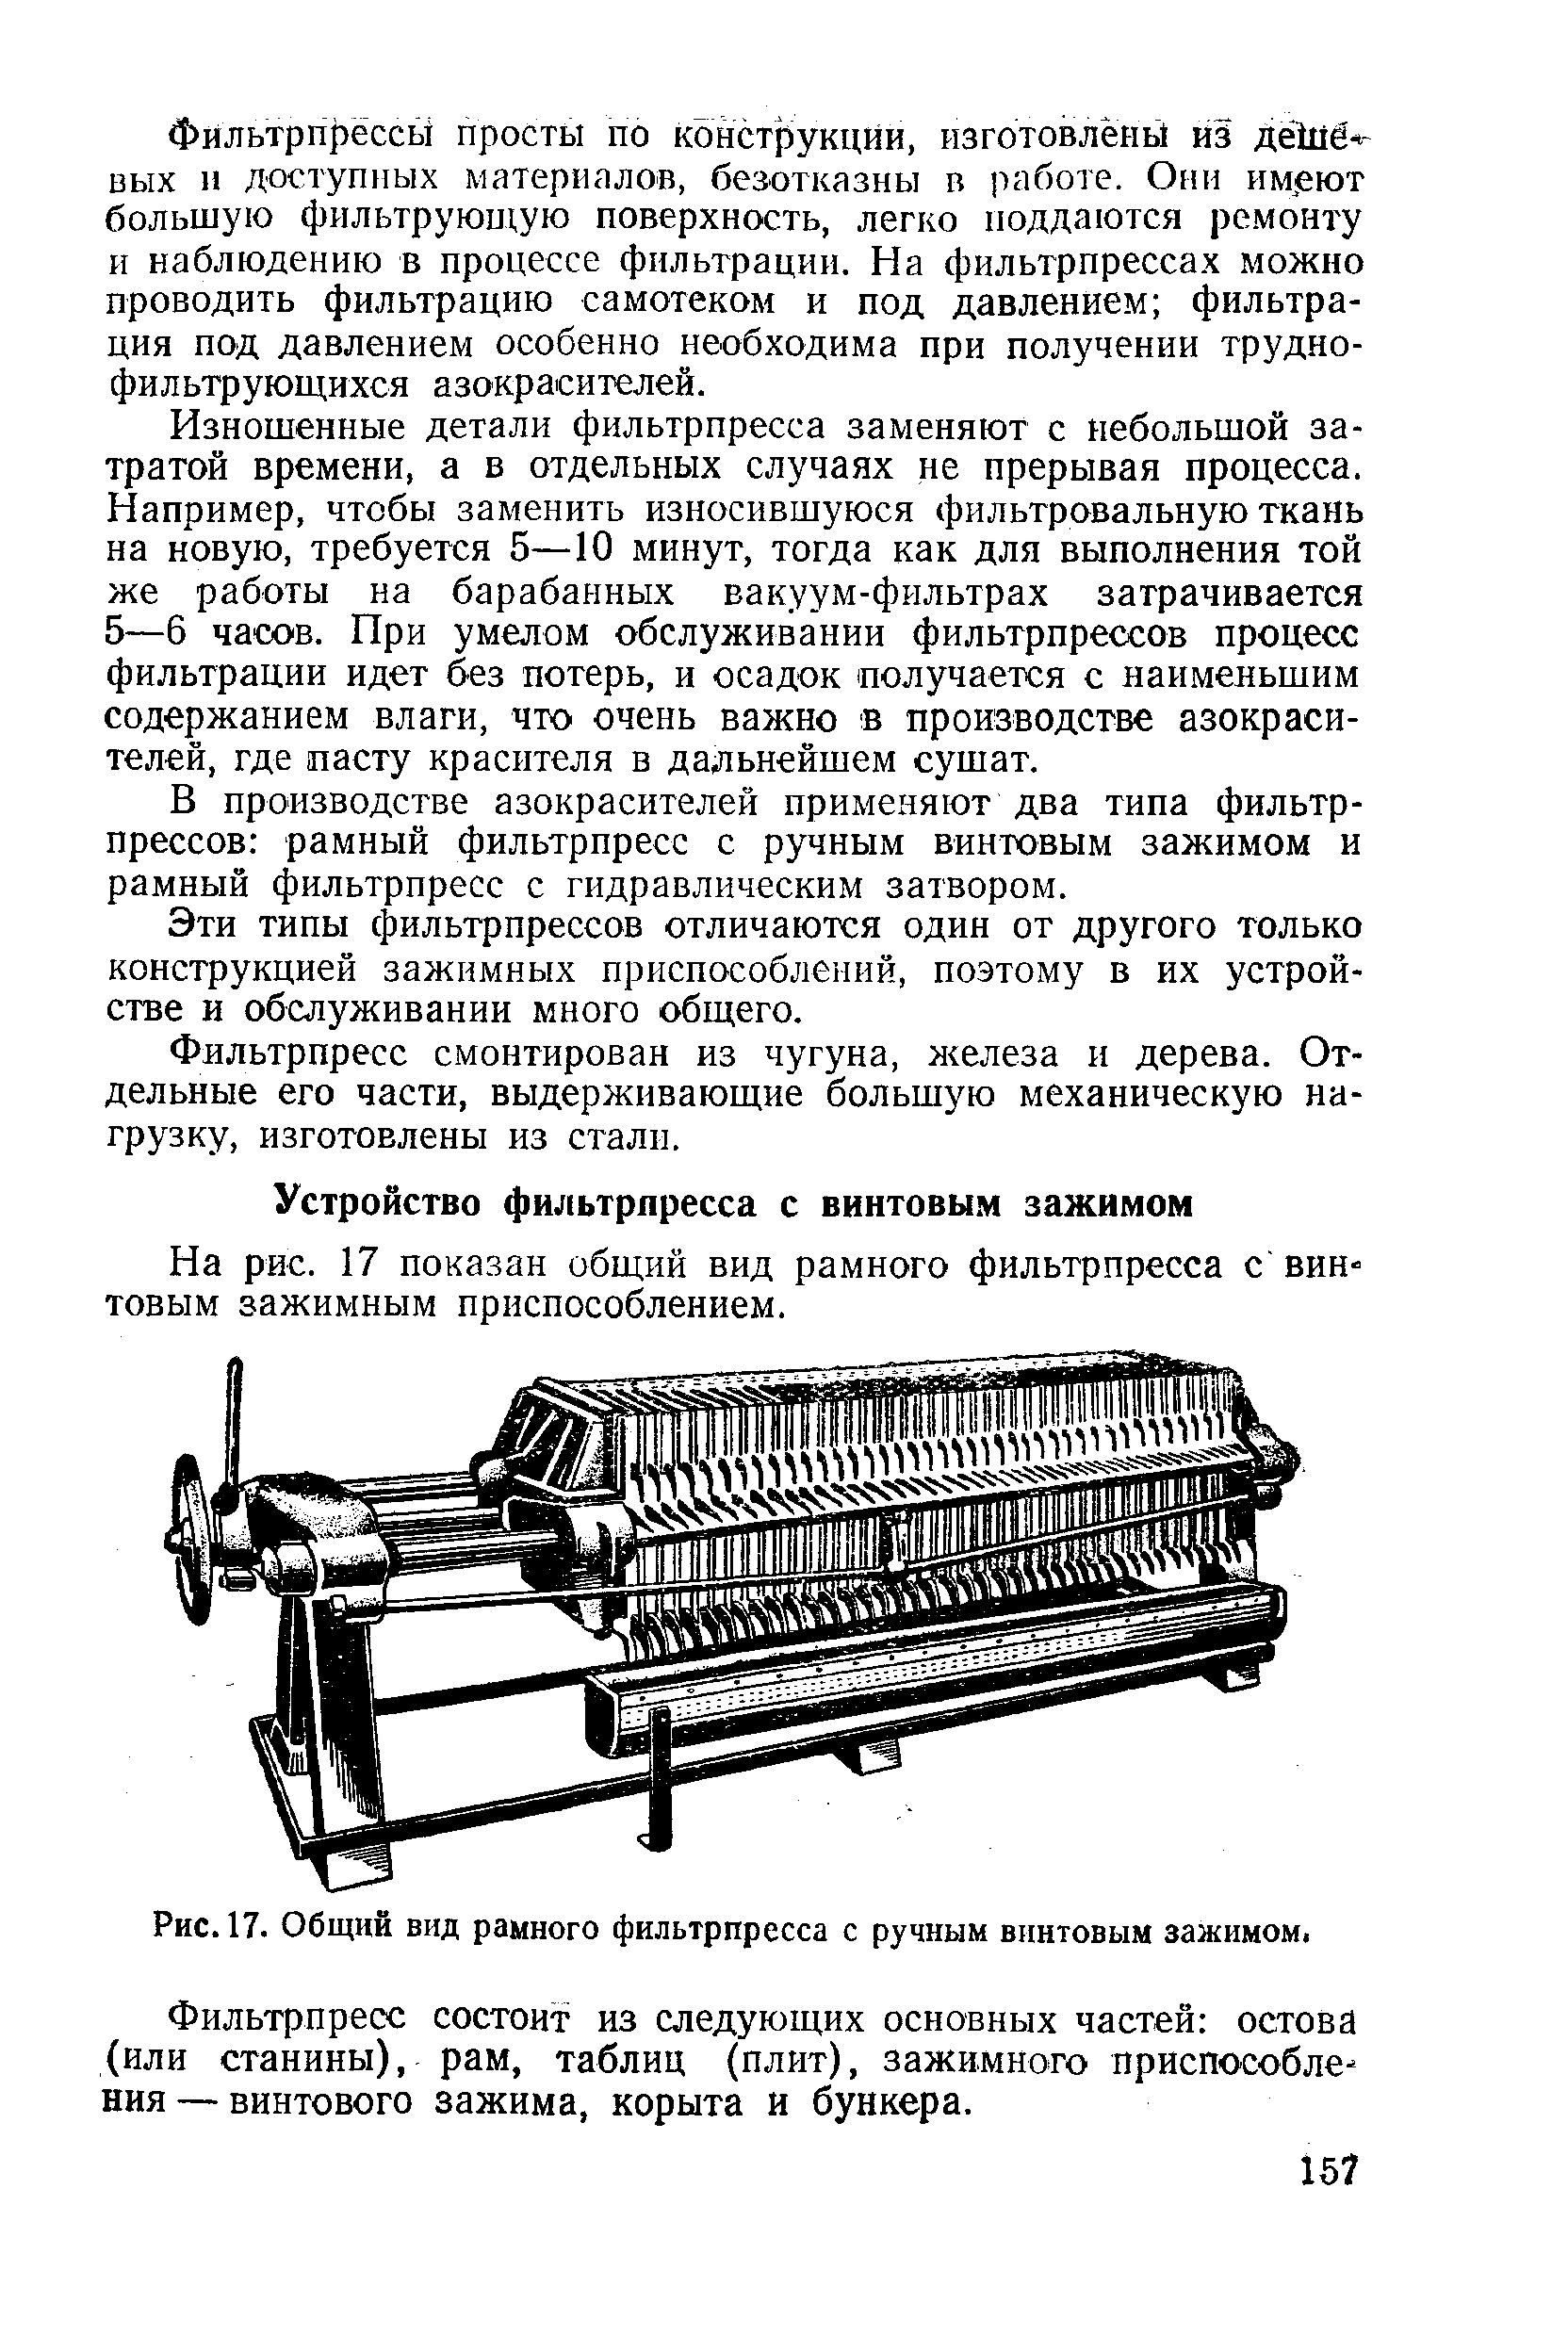 На рис. 17 показан общий вид рамного фильтрпресса с винтовым зажимным приспособлением.